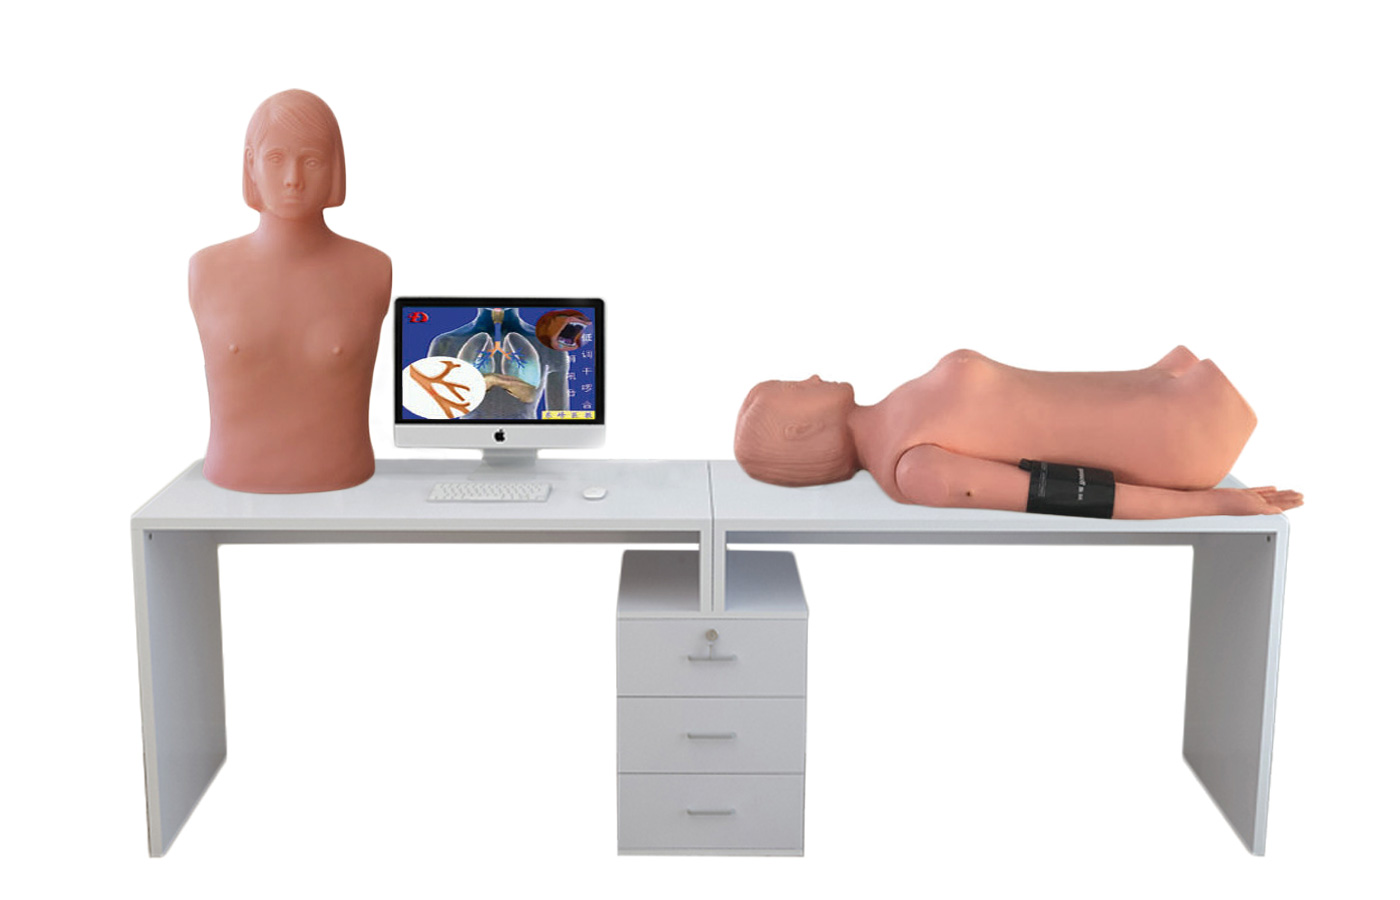 HD/XF9000A 智能型网络多媒体胸腹部检查教学系统